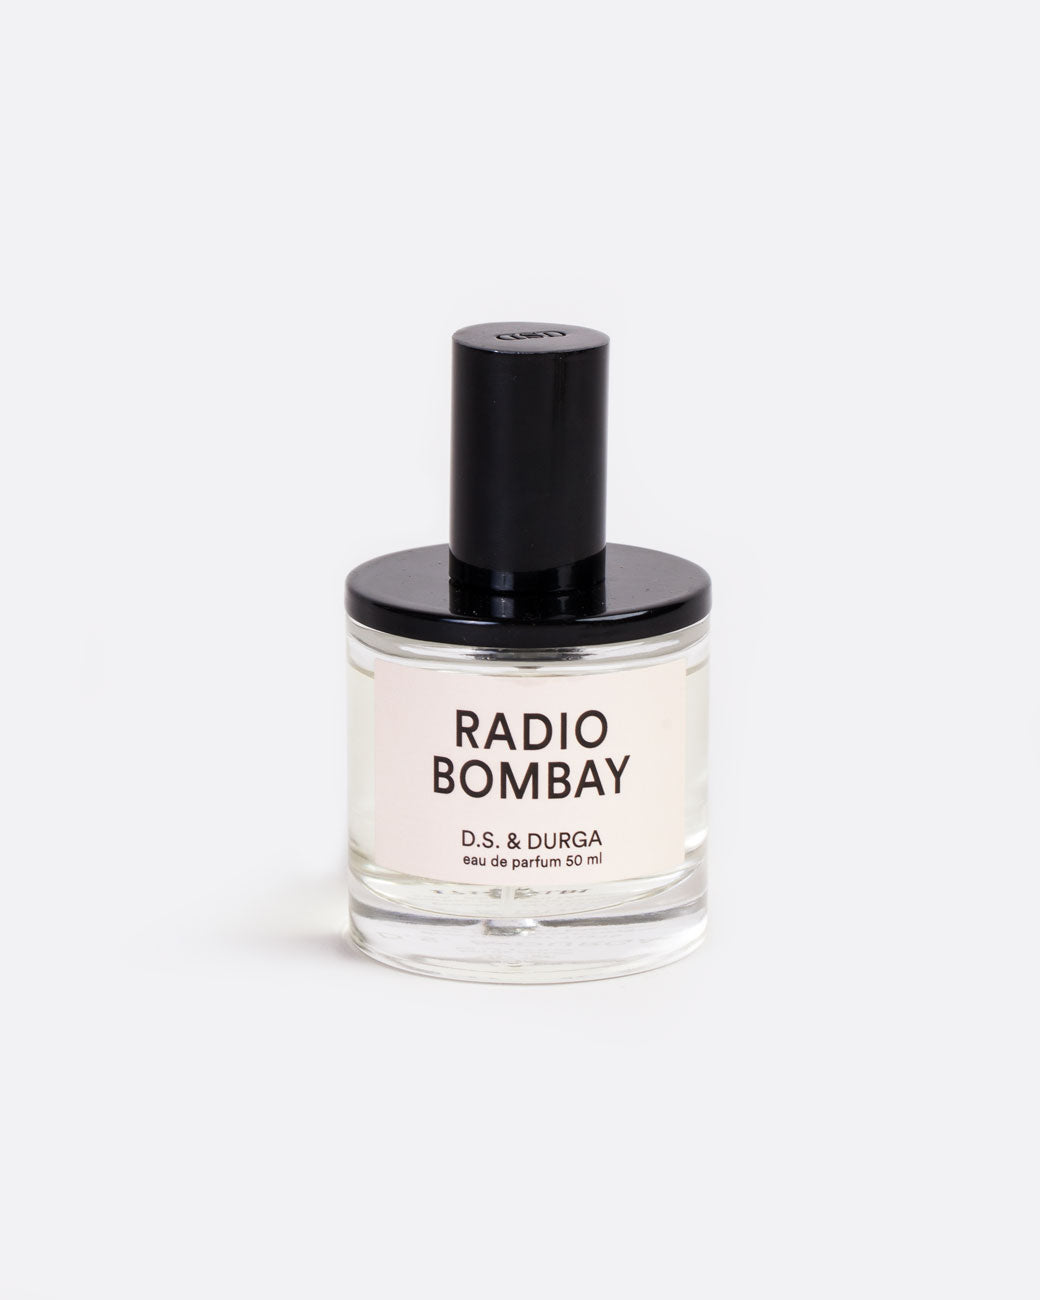 50ML glass bottle of D.S. & Durga Eau De Parfum: Radio Bombay with black shiny spritzer top